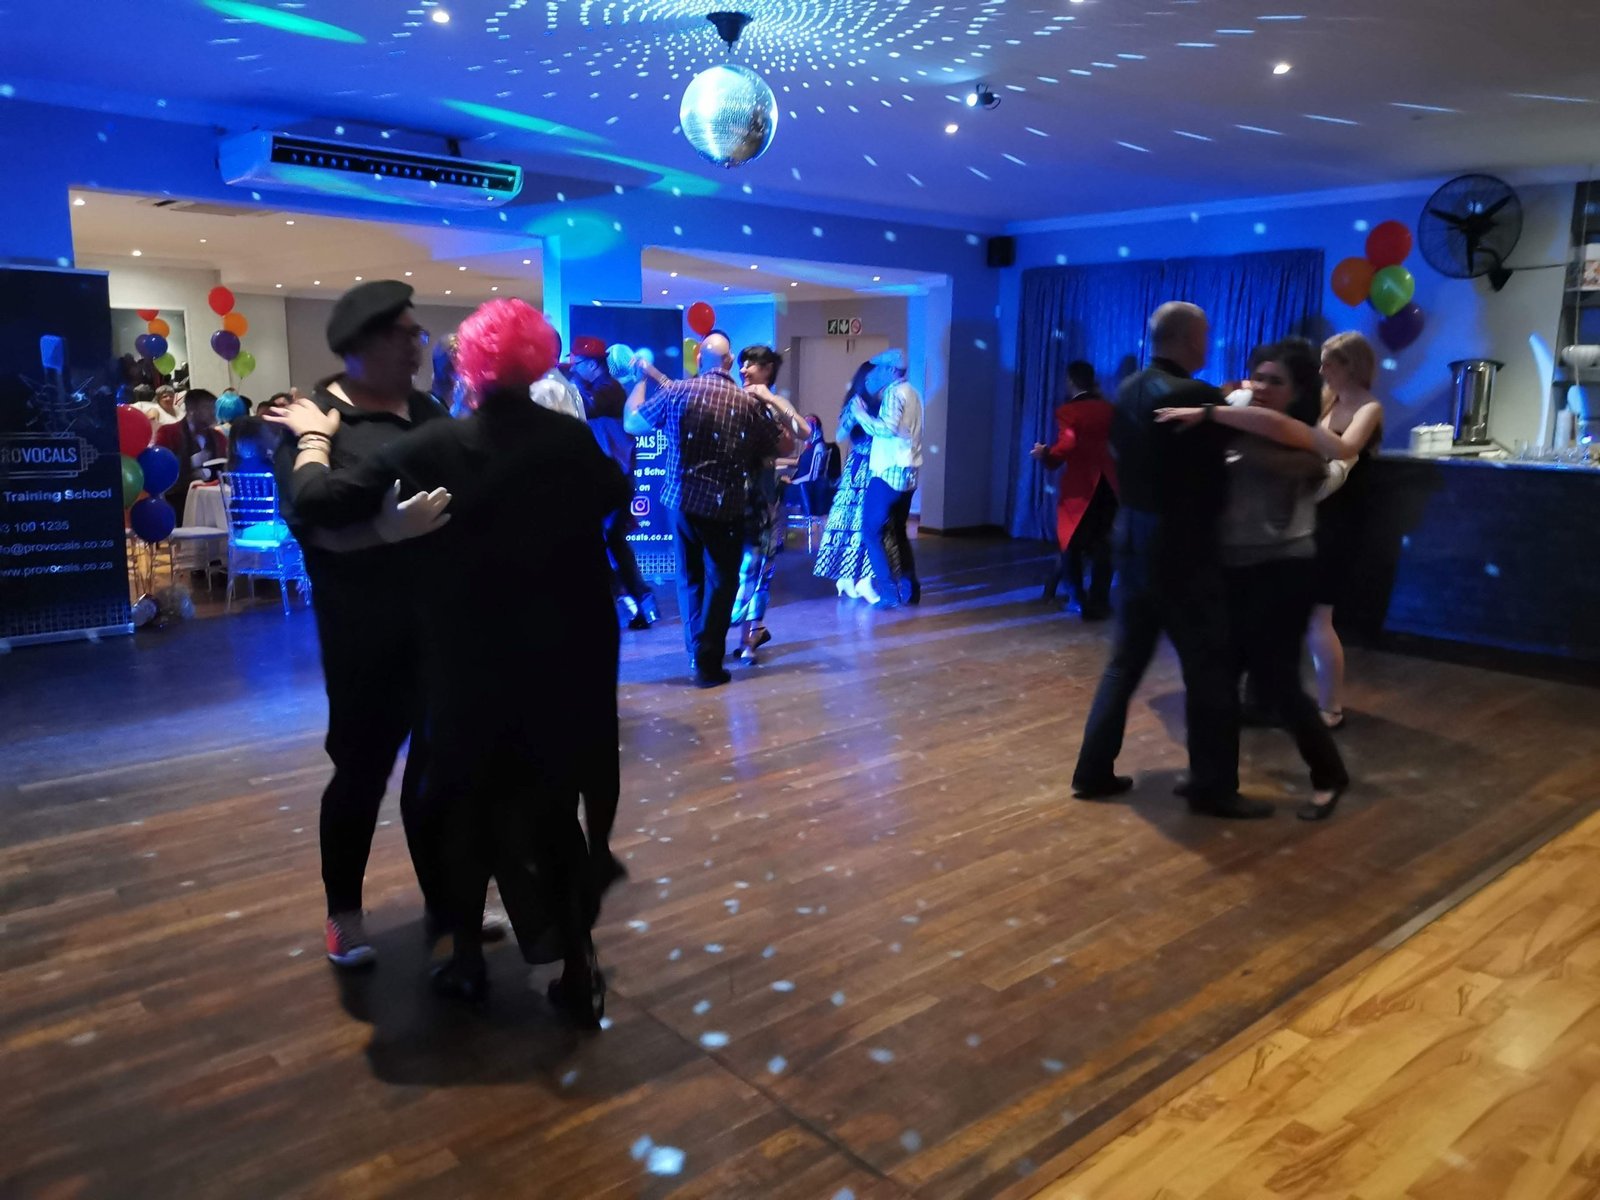 Dancing the Tango at the Dancemore Socials